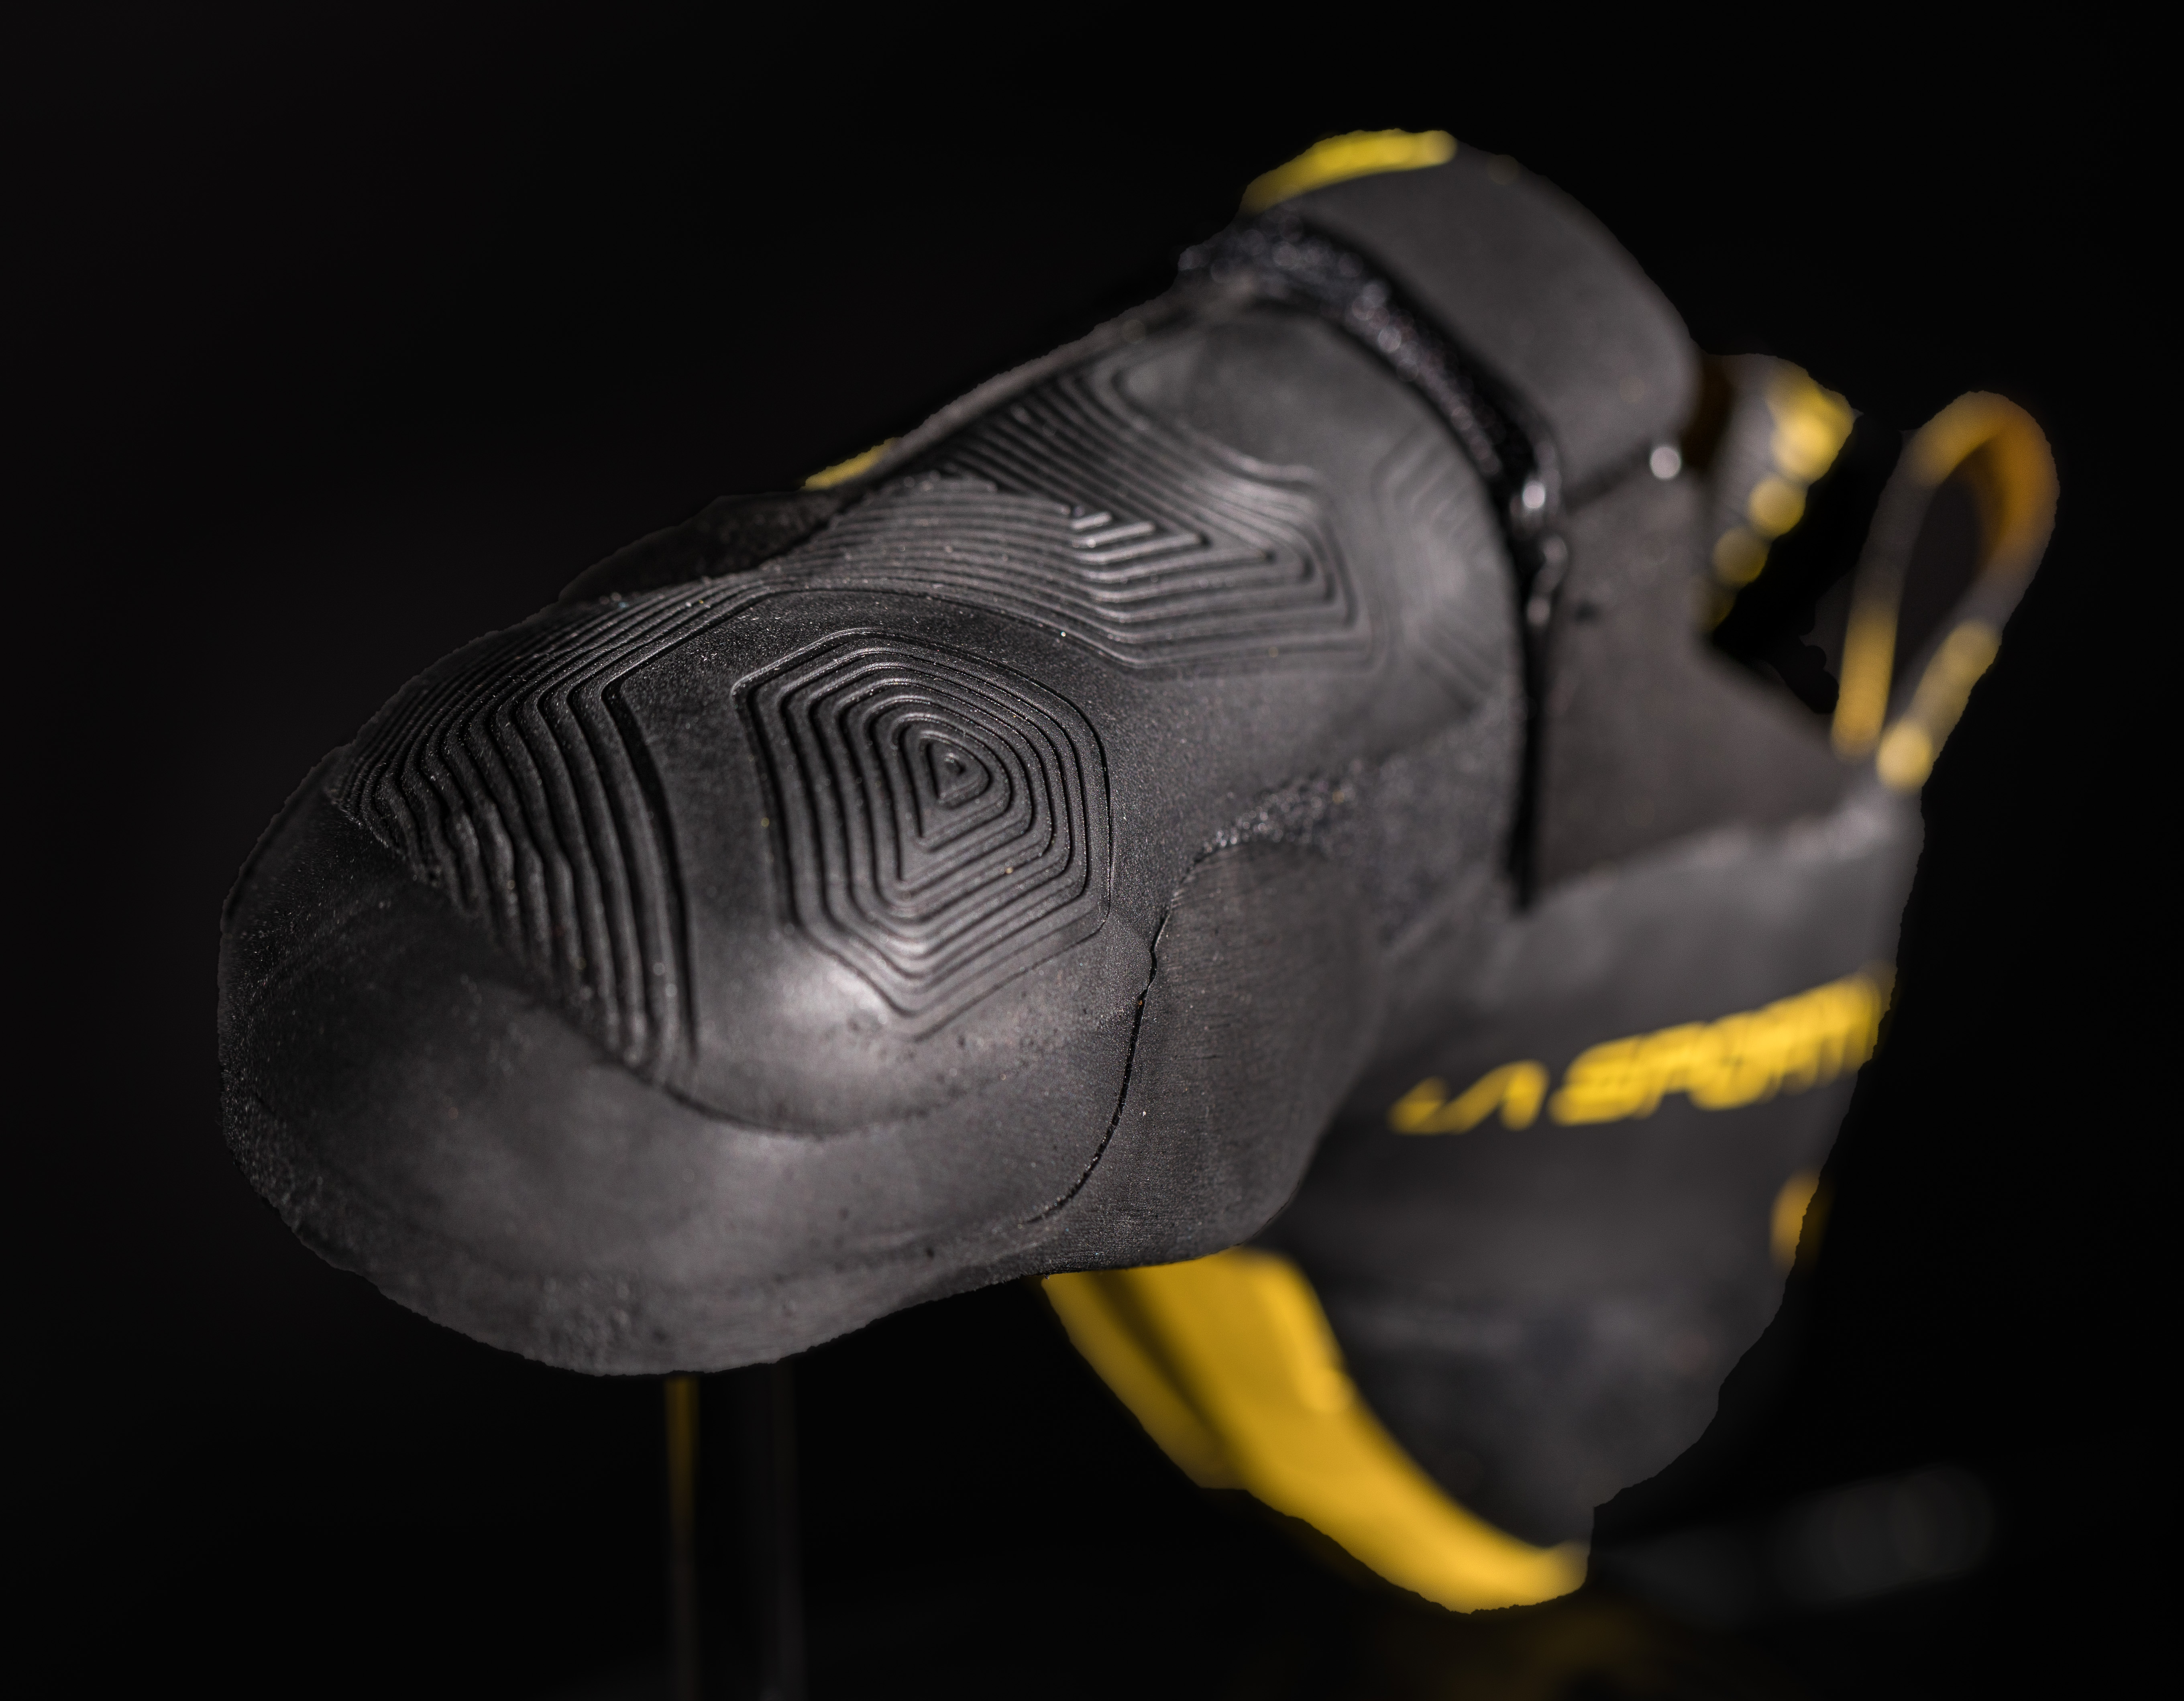 Чувствительные скальные туфли для боулдеринга La Sportiva Theory